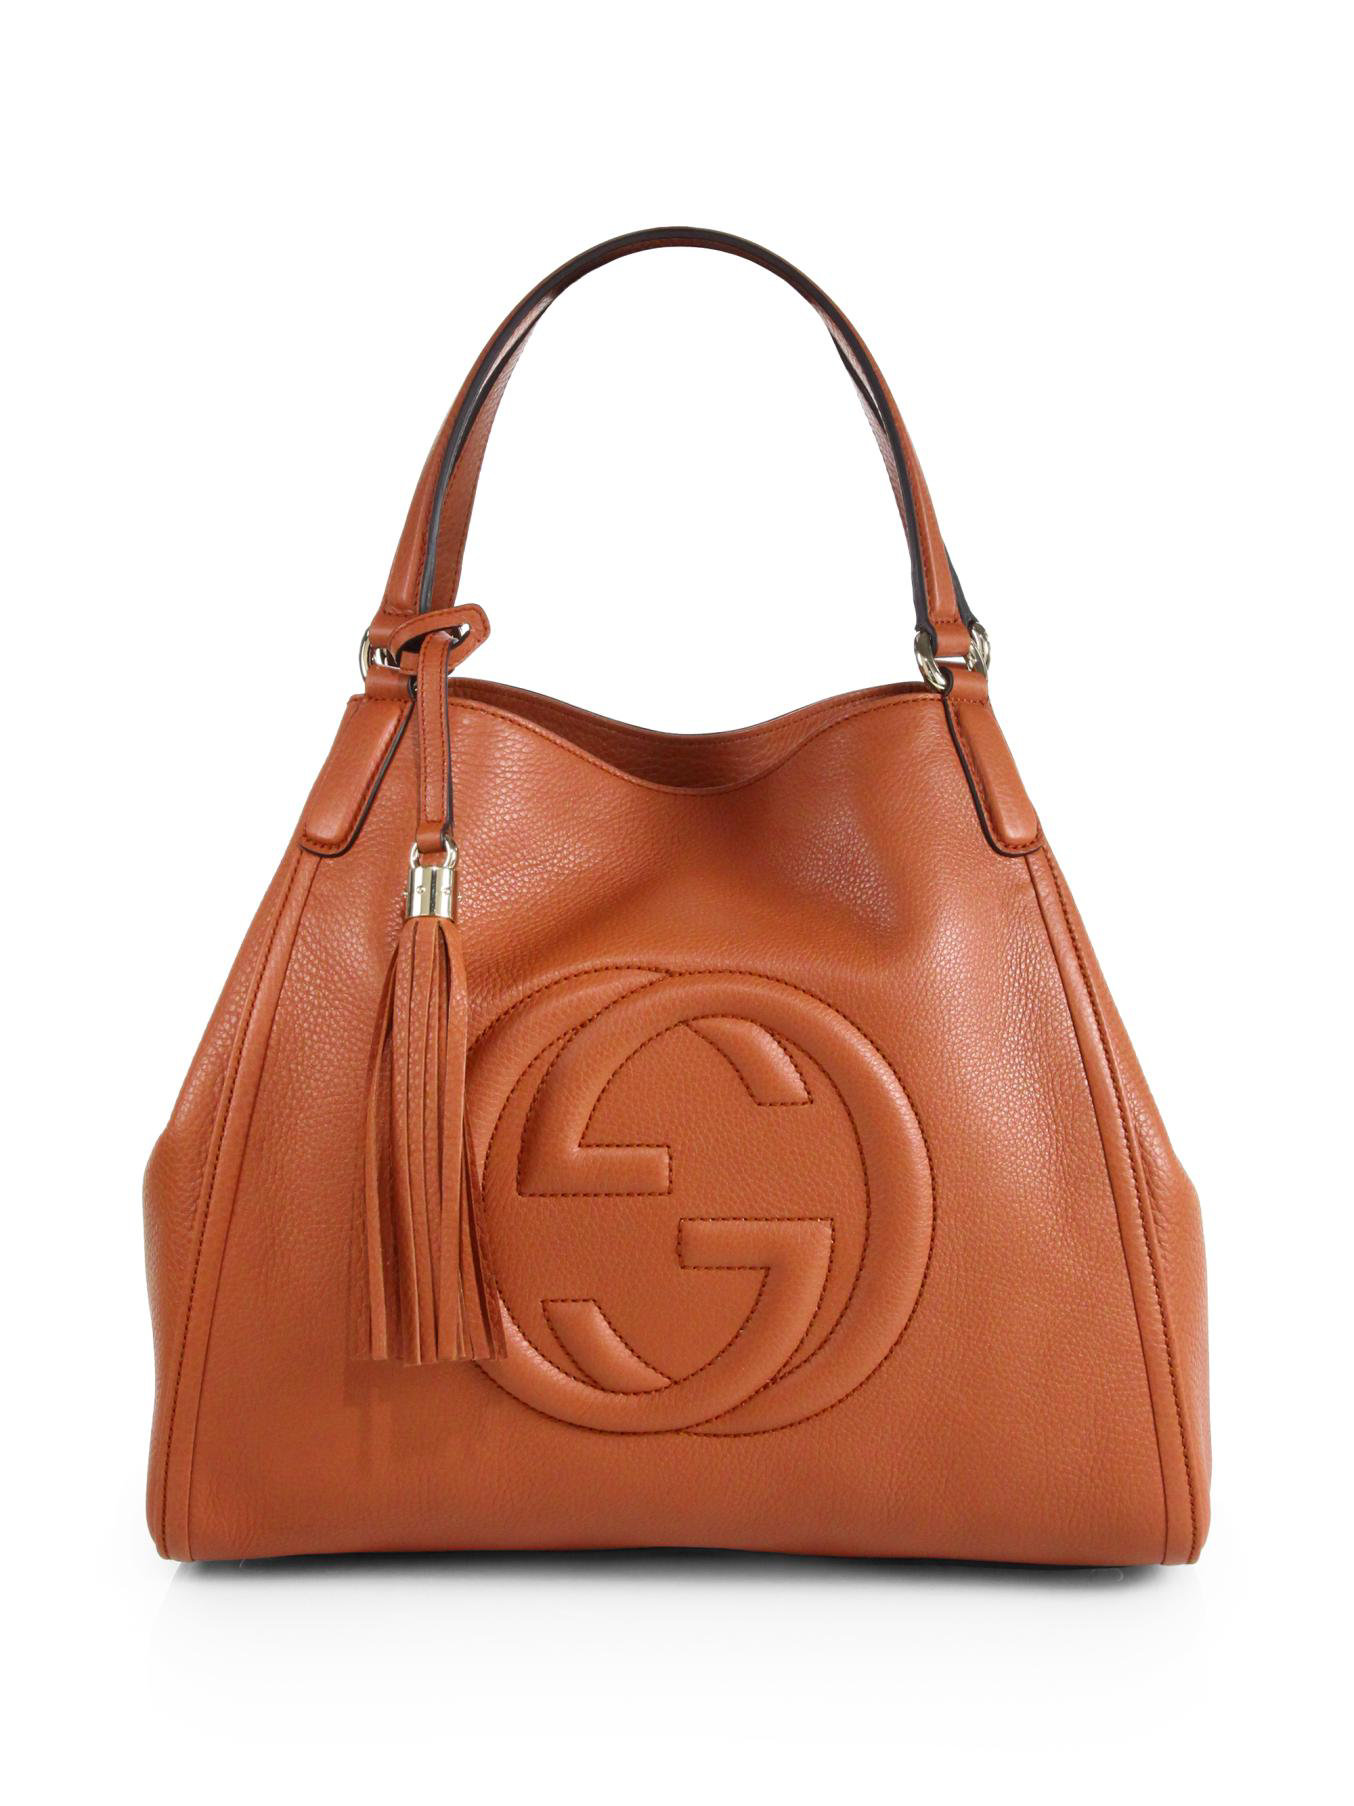 Lyst - Gucci Soho Leather Shoulder Bag